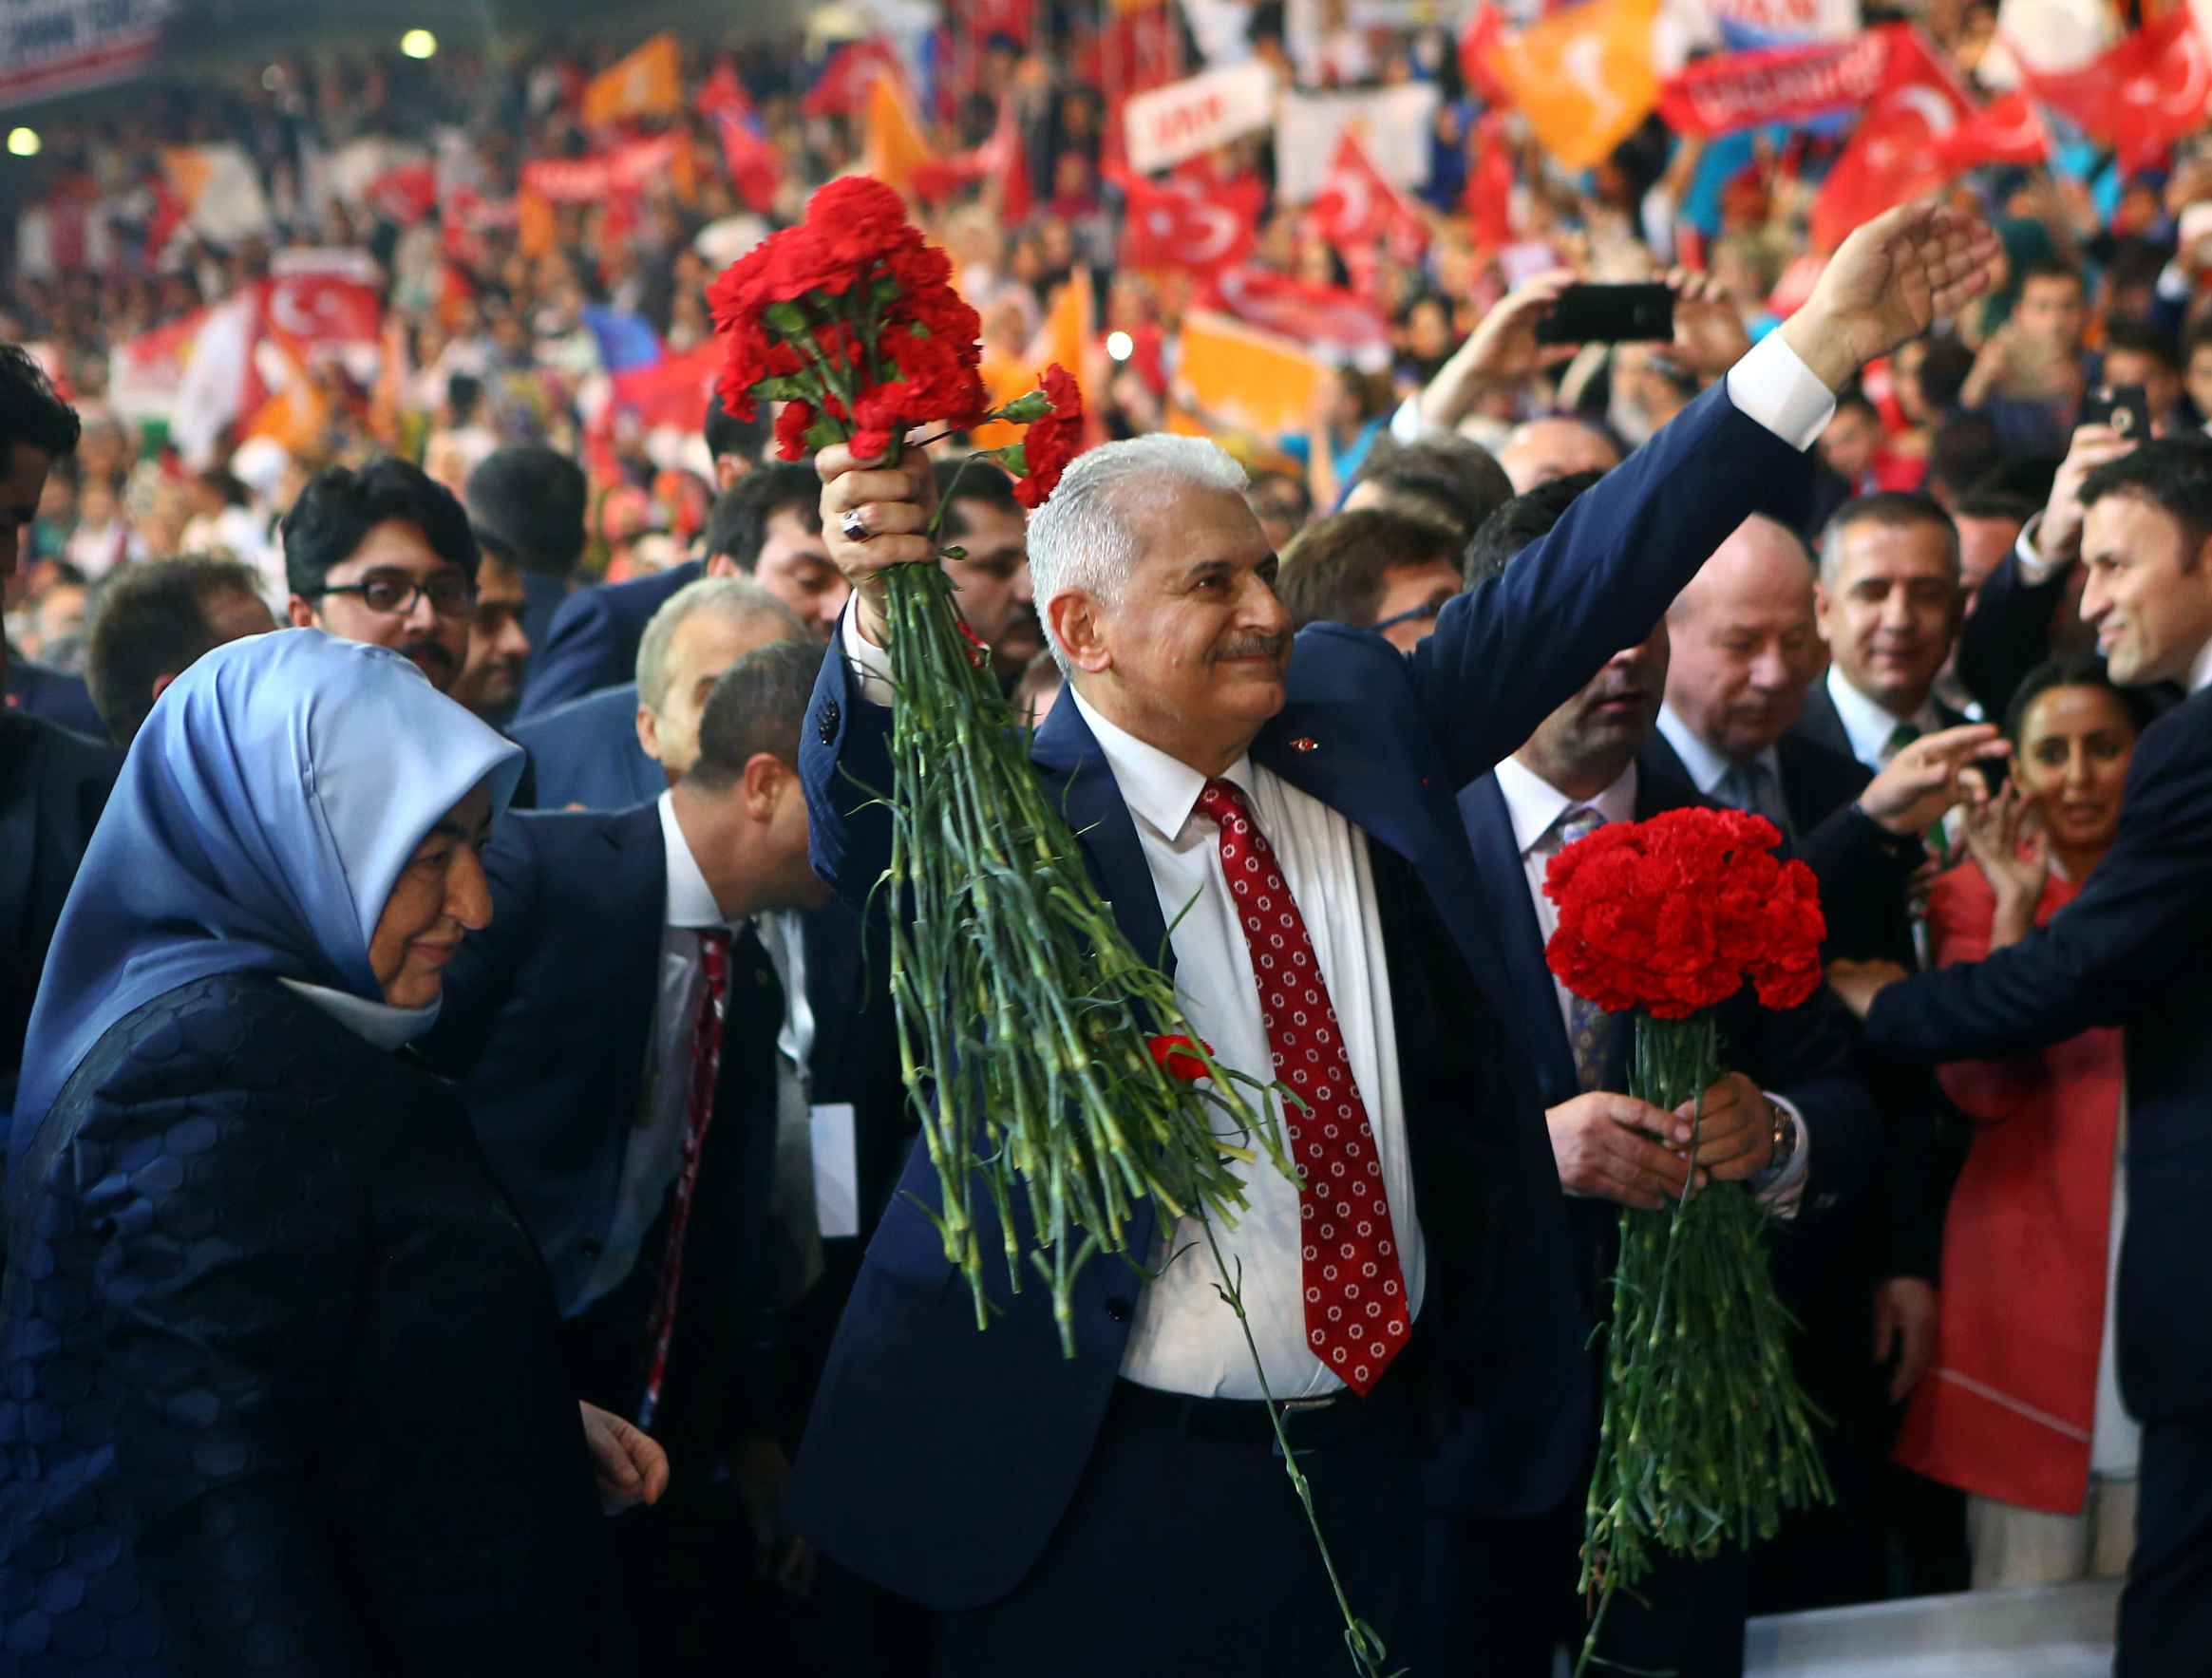 100 Prozent der Stimmen: Wunschkandidat Yildirim zum neuen AKP-Chef gewählt